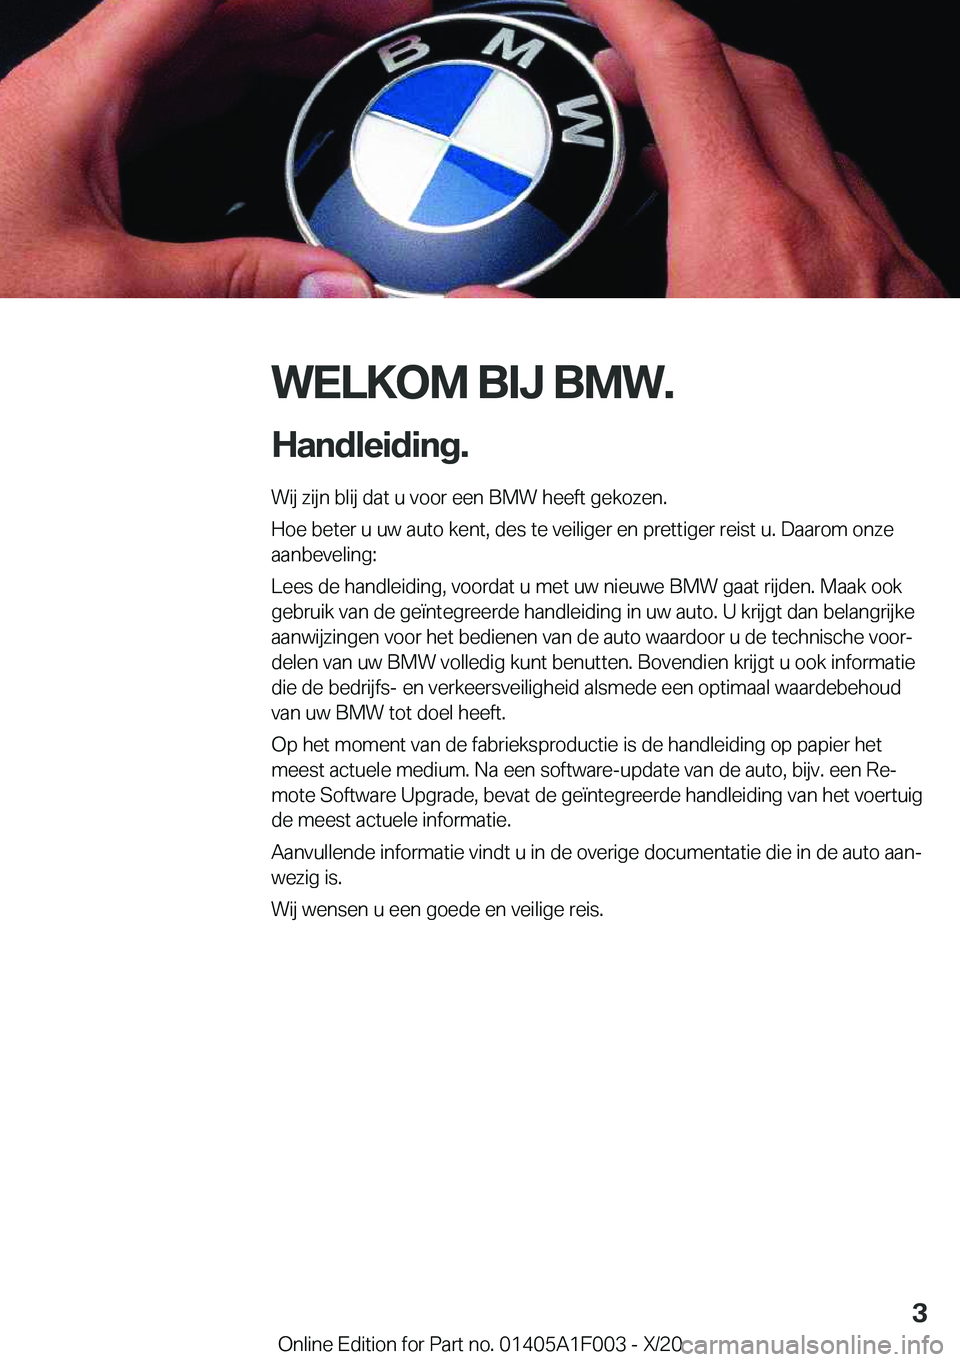 BMW X7 2021  Instructieboekjes (in Dutch) �W�E�L�K�O�M��B�I�J��B�M�W�.
�H�a�n�d�l�e�i�d�i�n�g�. �W�i�j��z�i�j�n��b�l�i�j��d�a�t��u��v�o�o�r��e�e�n��B�M�W��h�e�e�f�t��g�e�k�o�z�e�n�.
�H�o�e��b�e�t�e�r��u��u�w��a�u�t�o��k�e�n�t�